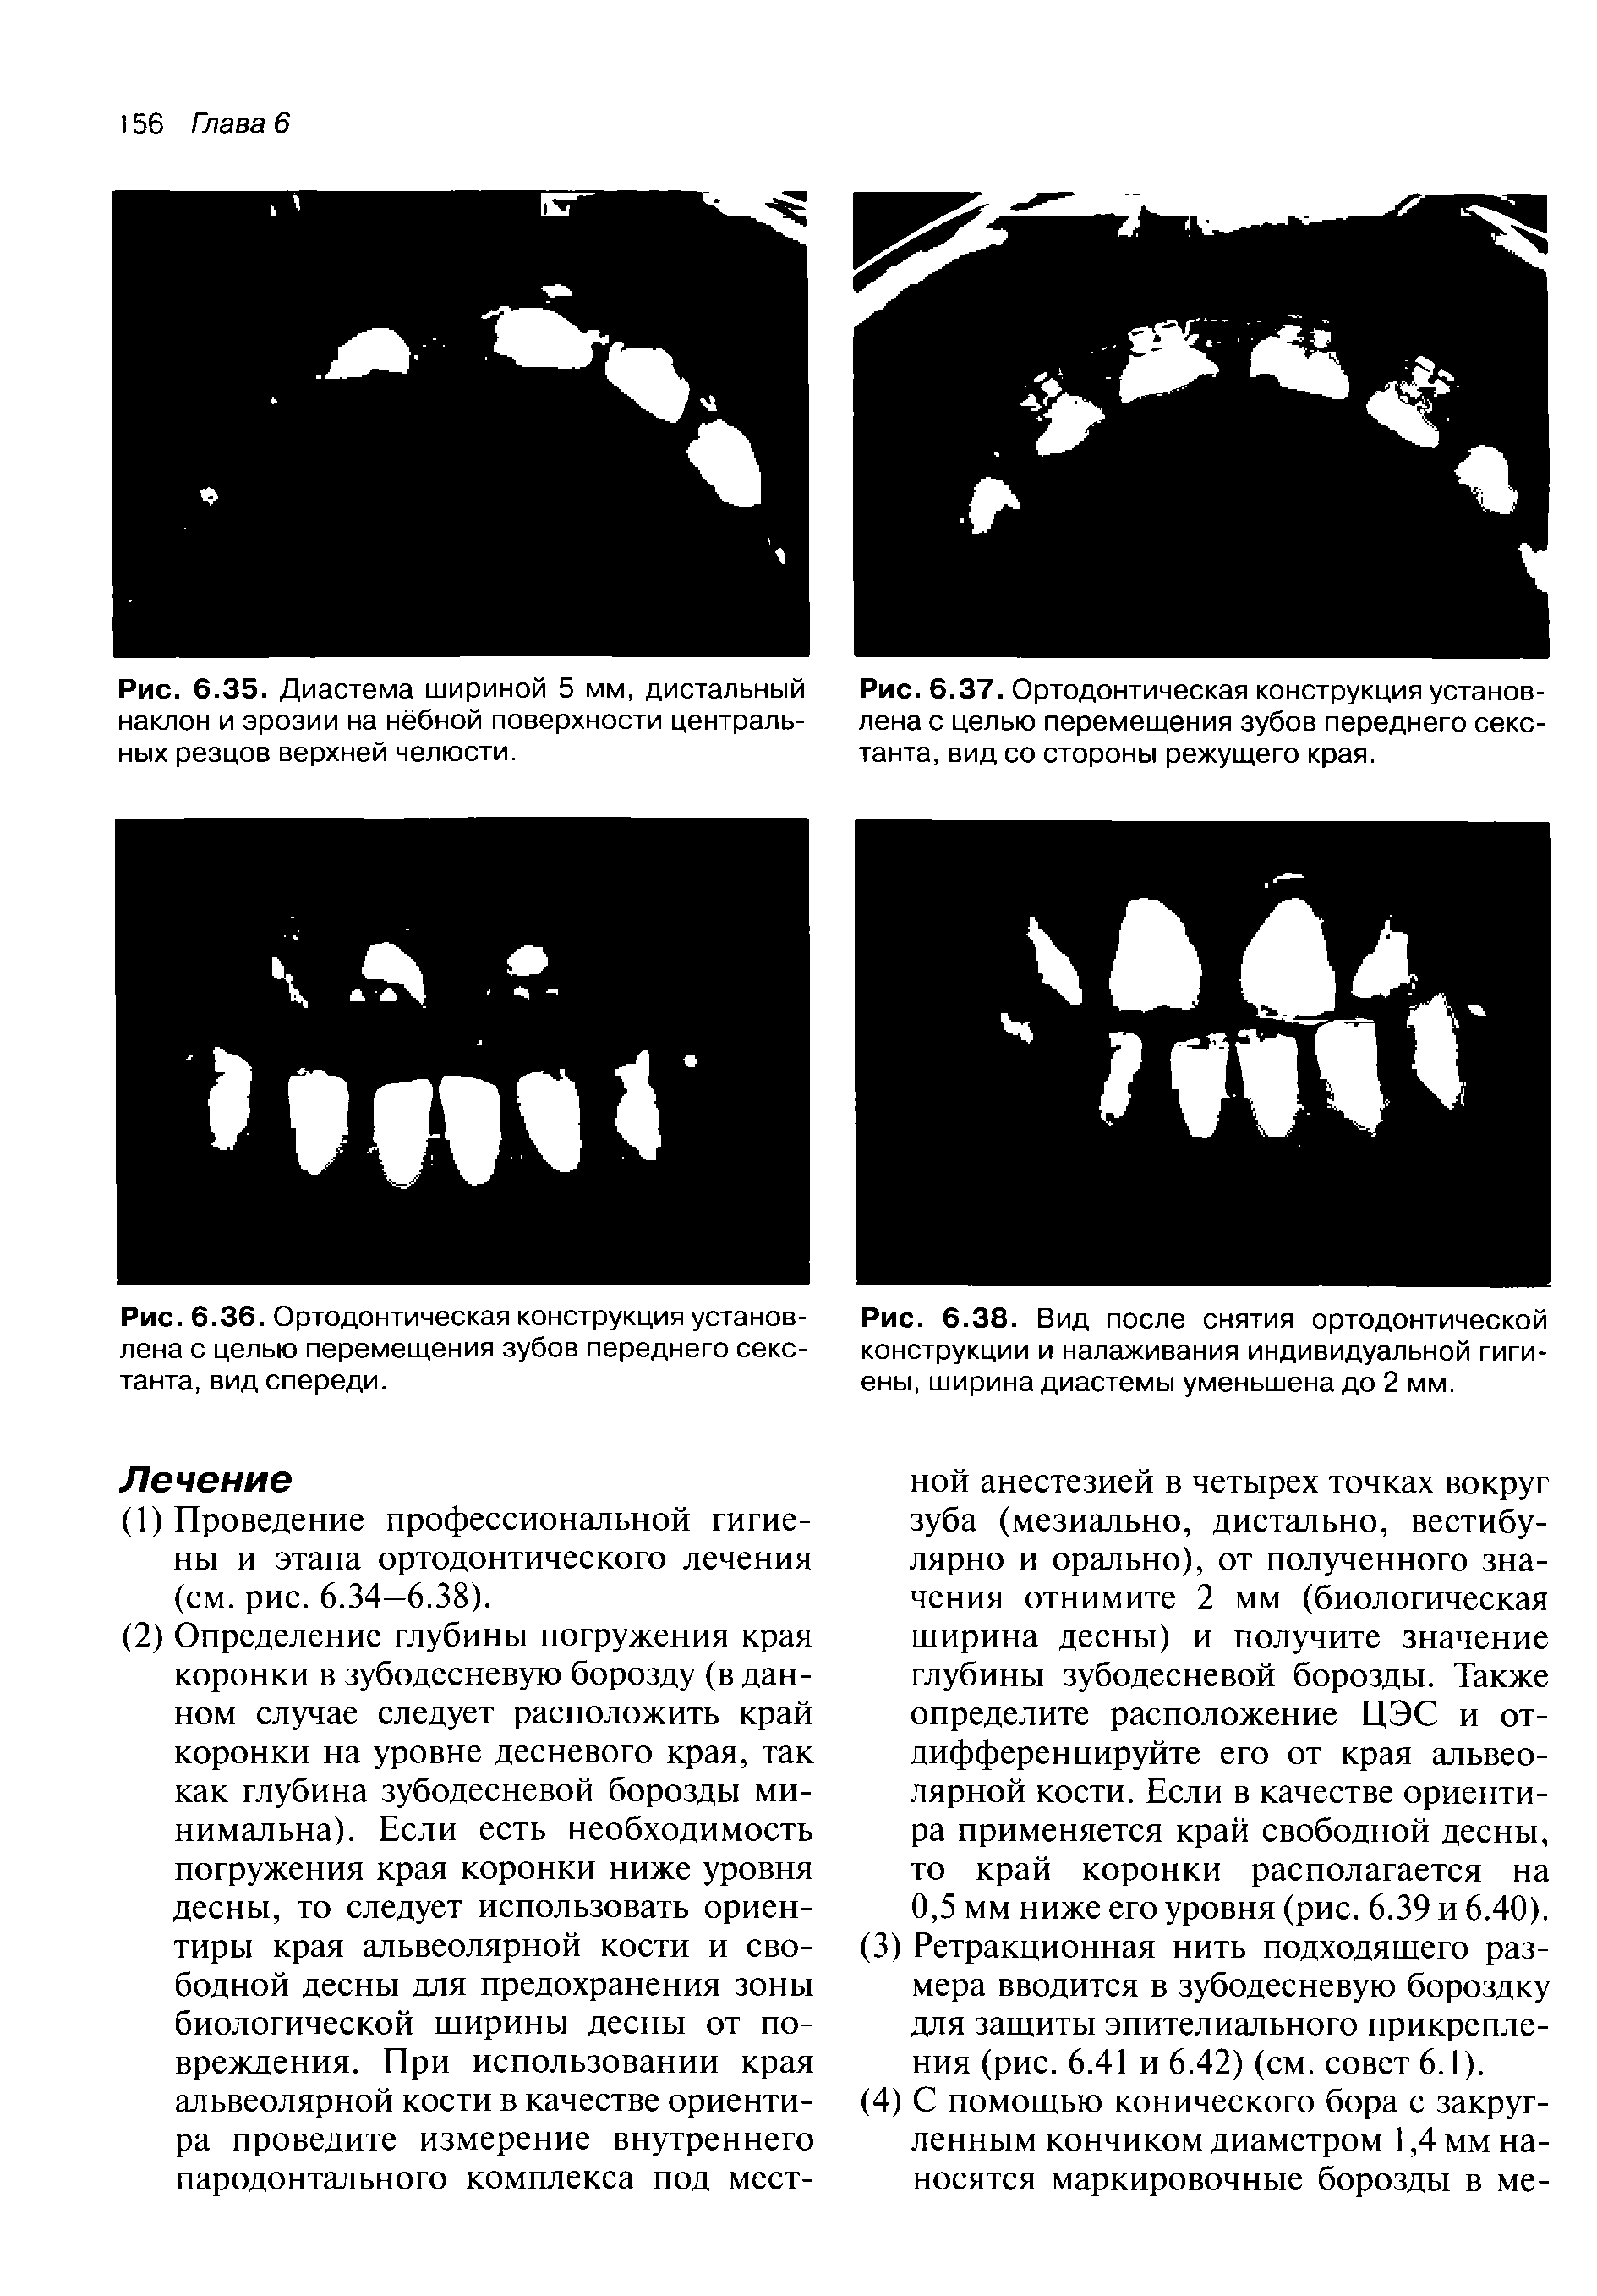 Рис. 6.37. Ортодонтическая конструкция установлена с целью перемещения зубов переднего секстанта, вид со стороны режущего края.